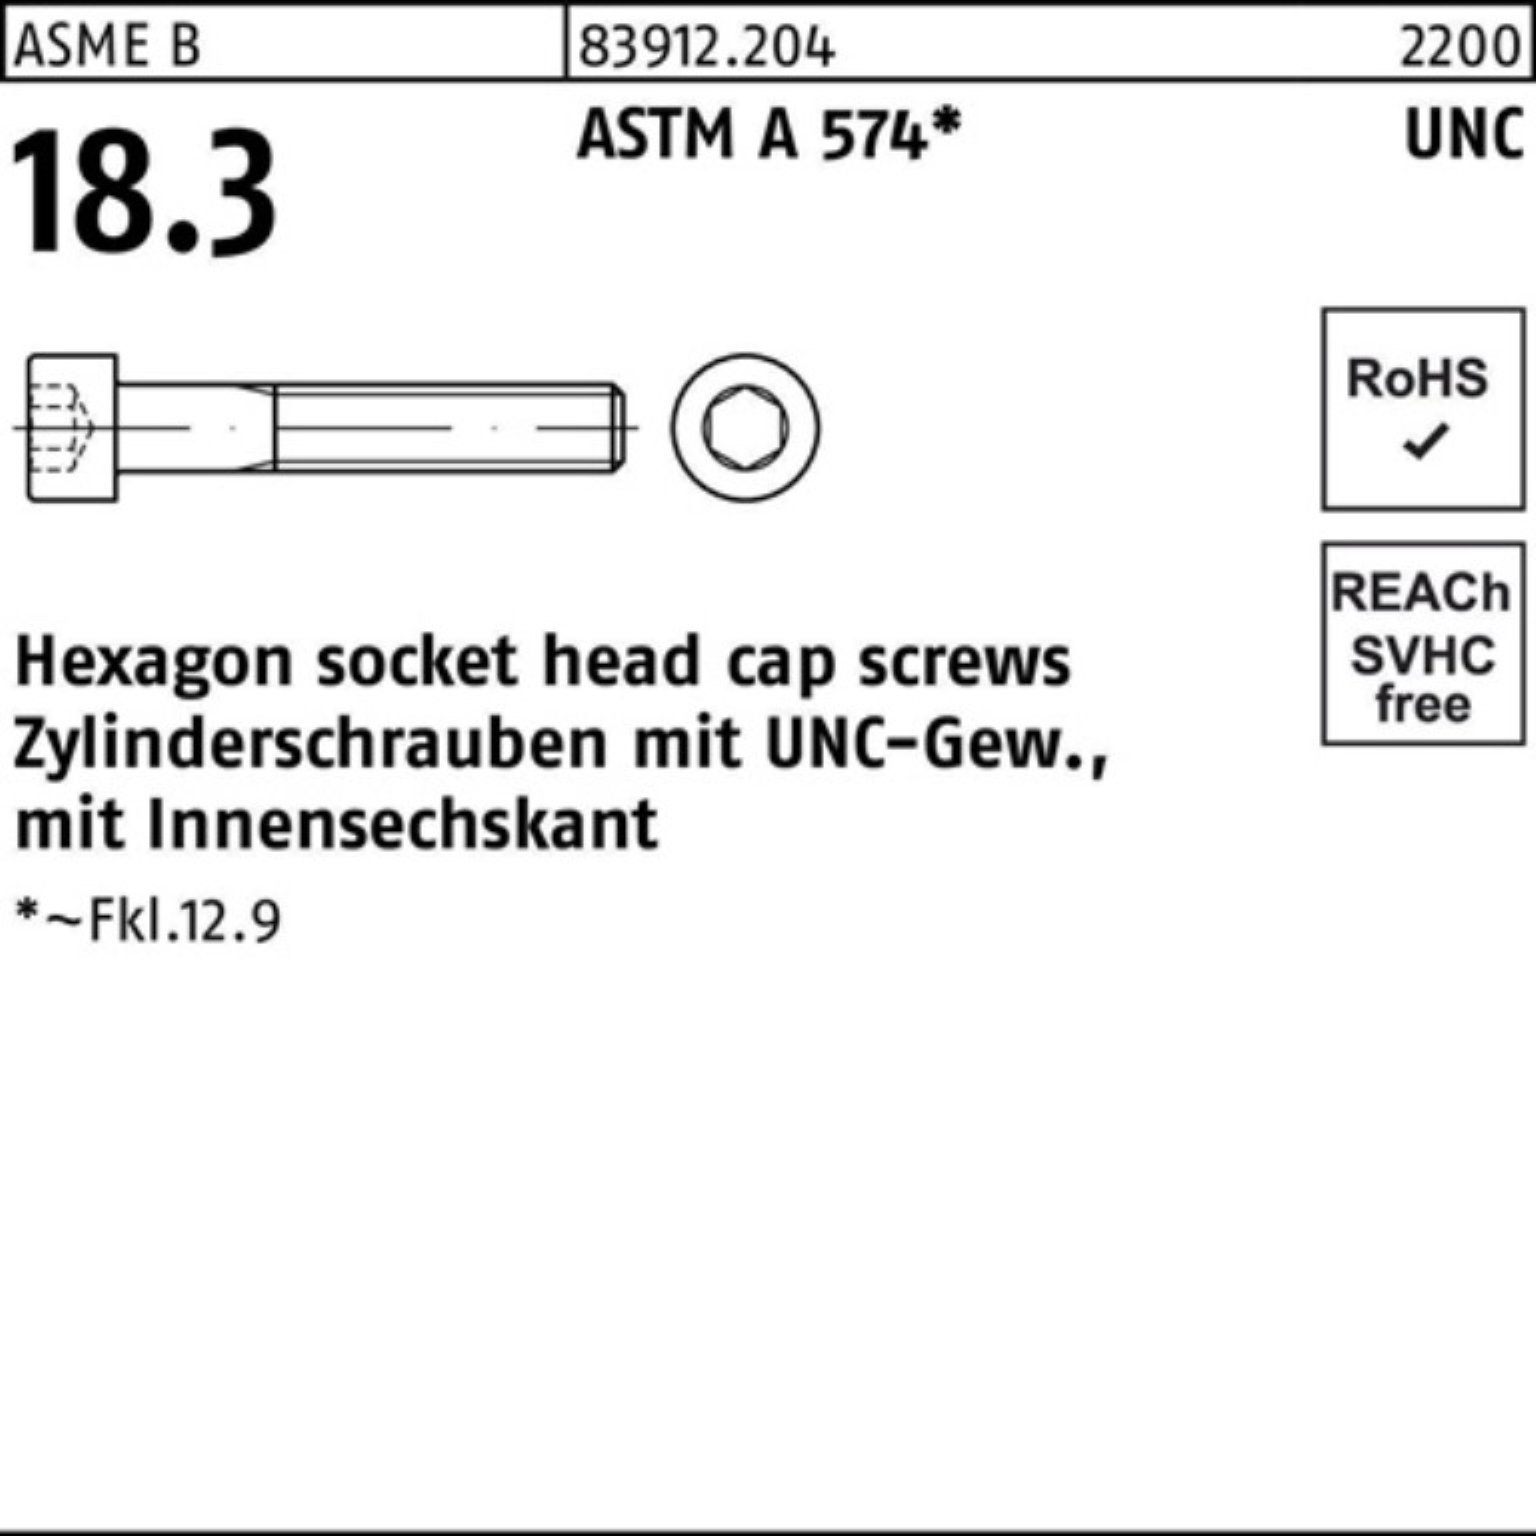 R 200er Zylinderschraube ASTM 1/4 Zylinderschraube 83912 UNC-Gewinde/Innen-6kt Pack #6x Reyher